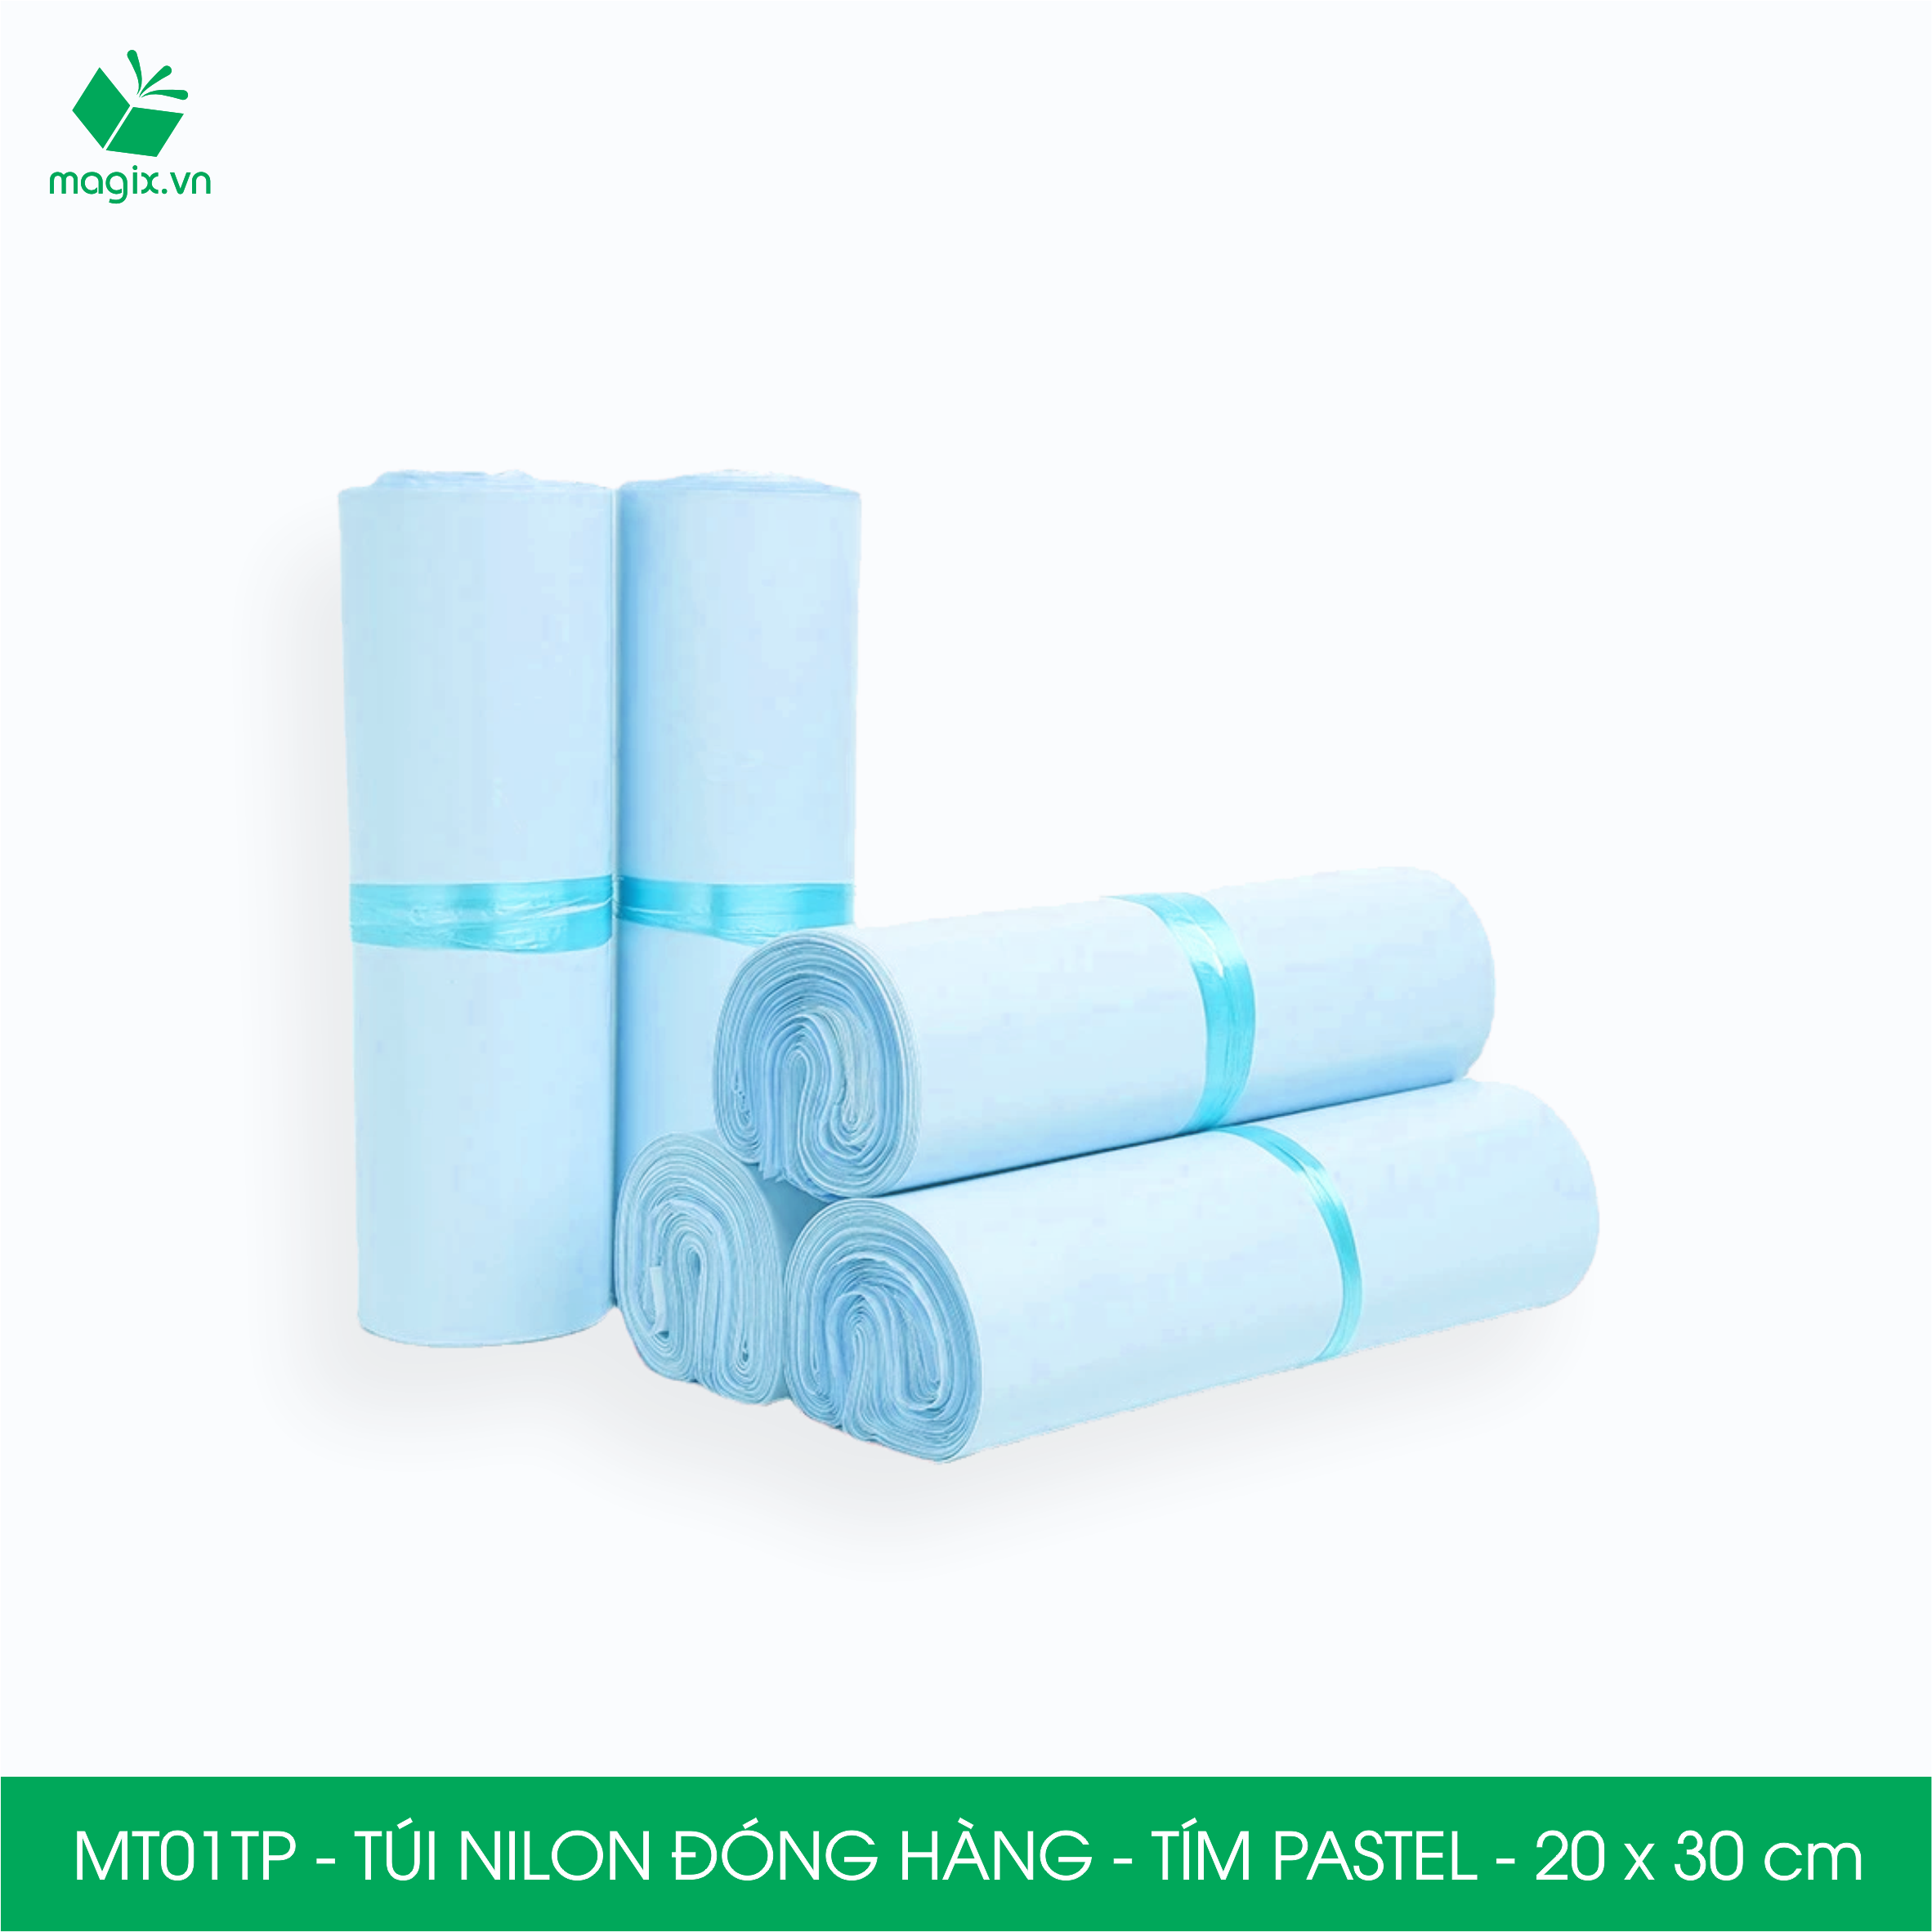 MT21DP - 32x45 cm - Túi nilon gói hàng - 300 túi niêm phong đóng hàng màu xanh pastel